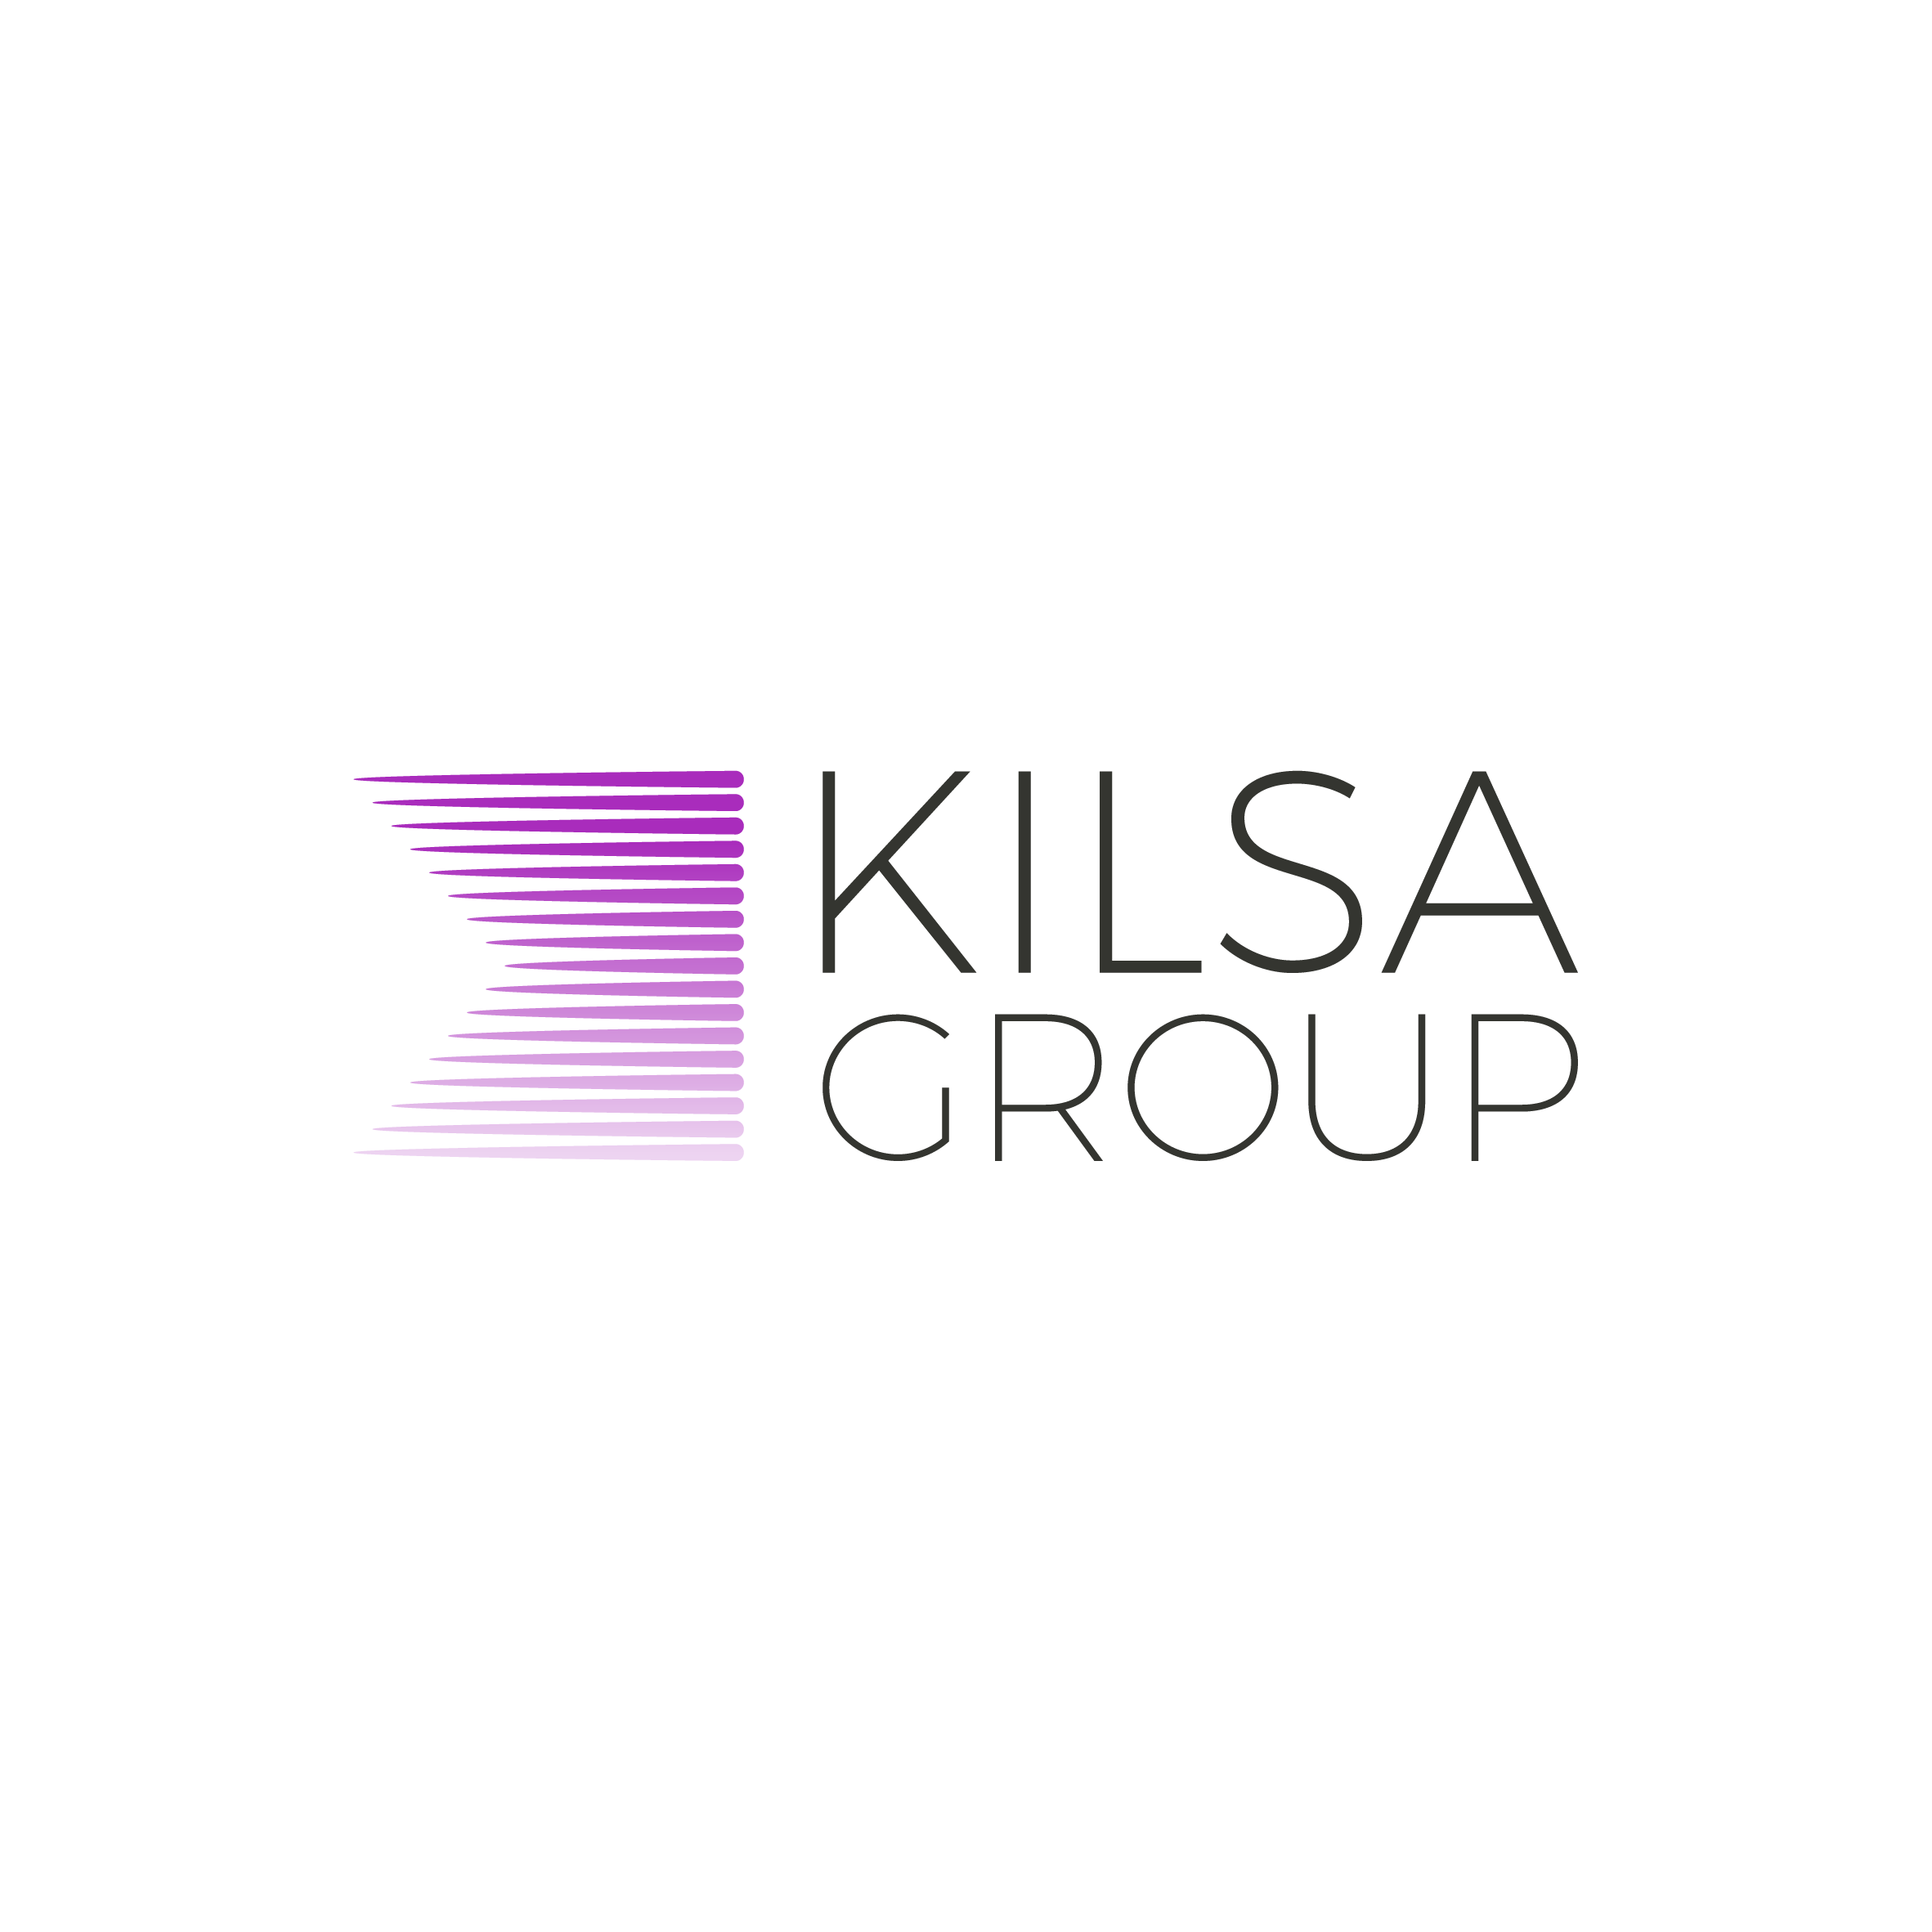 KILSA group